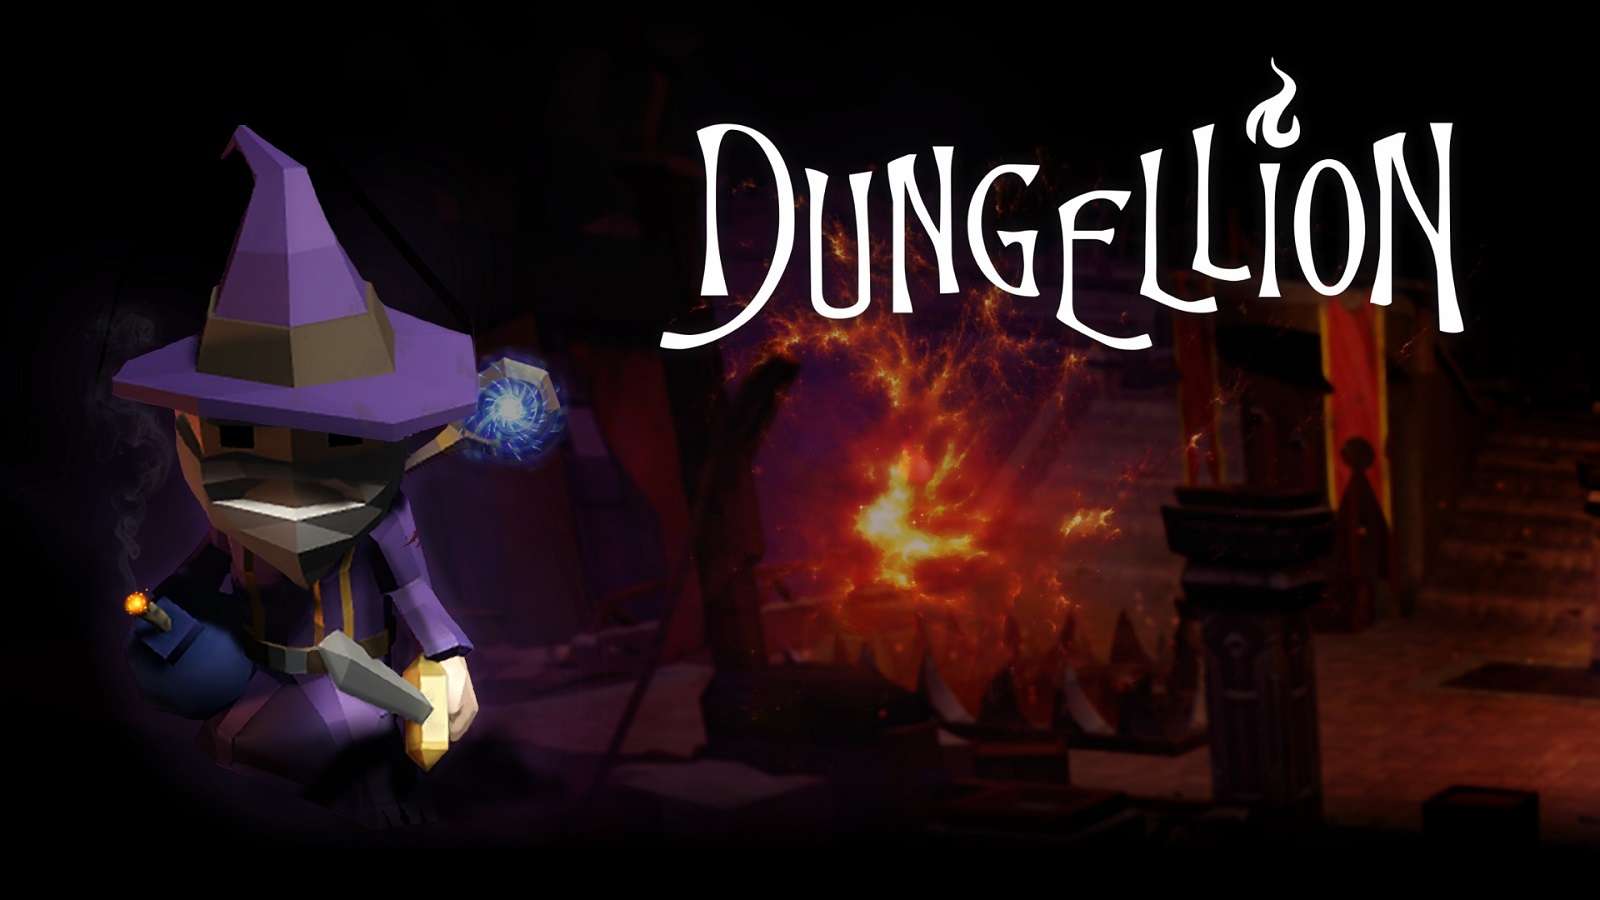 Nuevos trailer y detalles del juego Dungellion